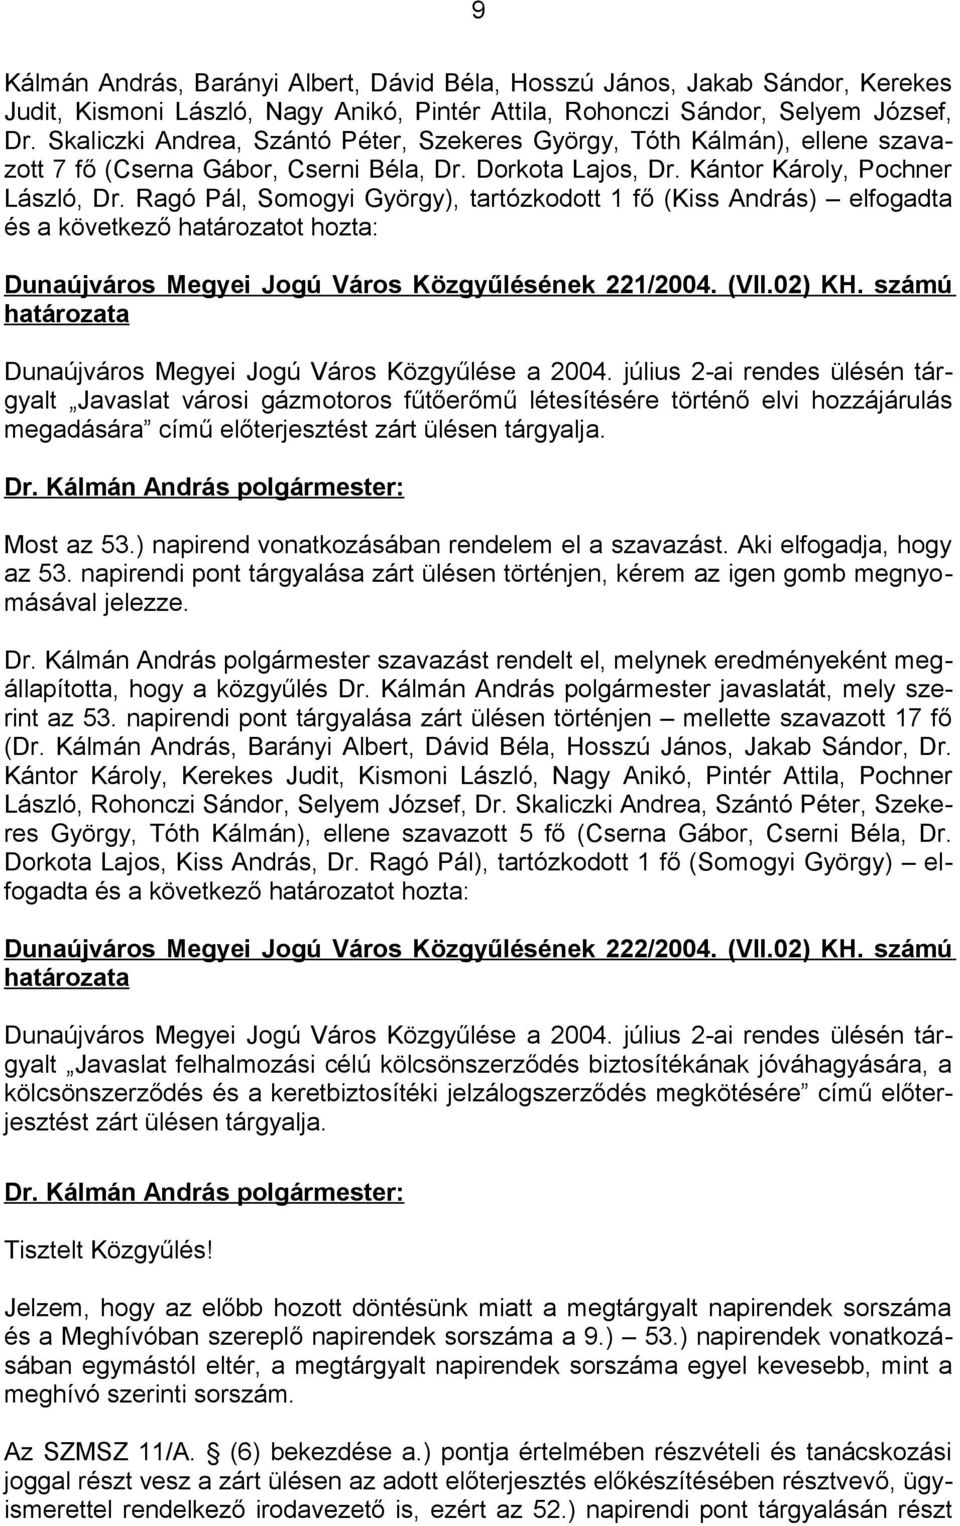 Ragó Pál, Somogyi György), tartózkodott 1 fő (Kiss András) elfogadta és a következő határozatot hozta: Dunaújváros Megyei Jogú Város Közgyűlésének 221/2004. (VII.02) KH.